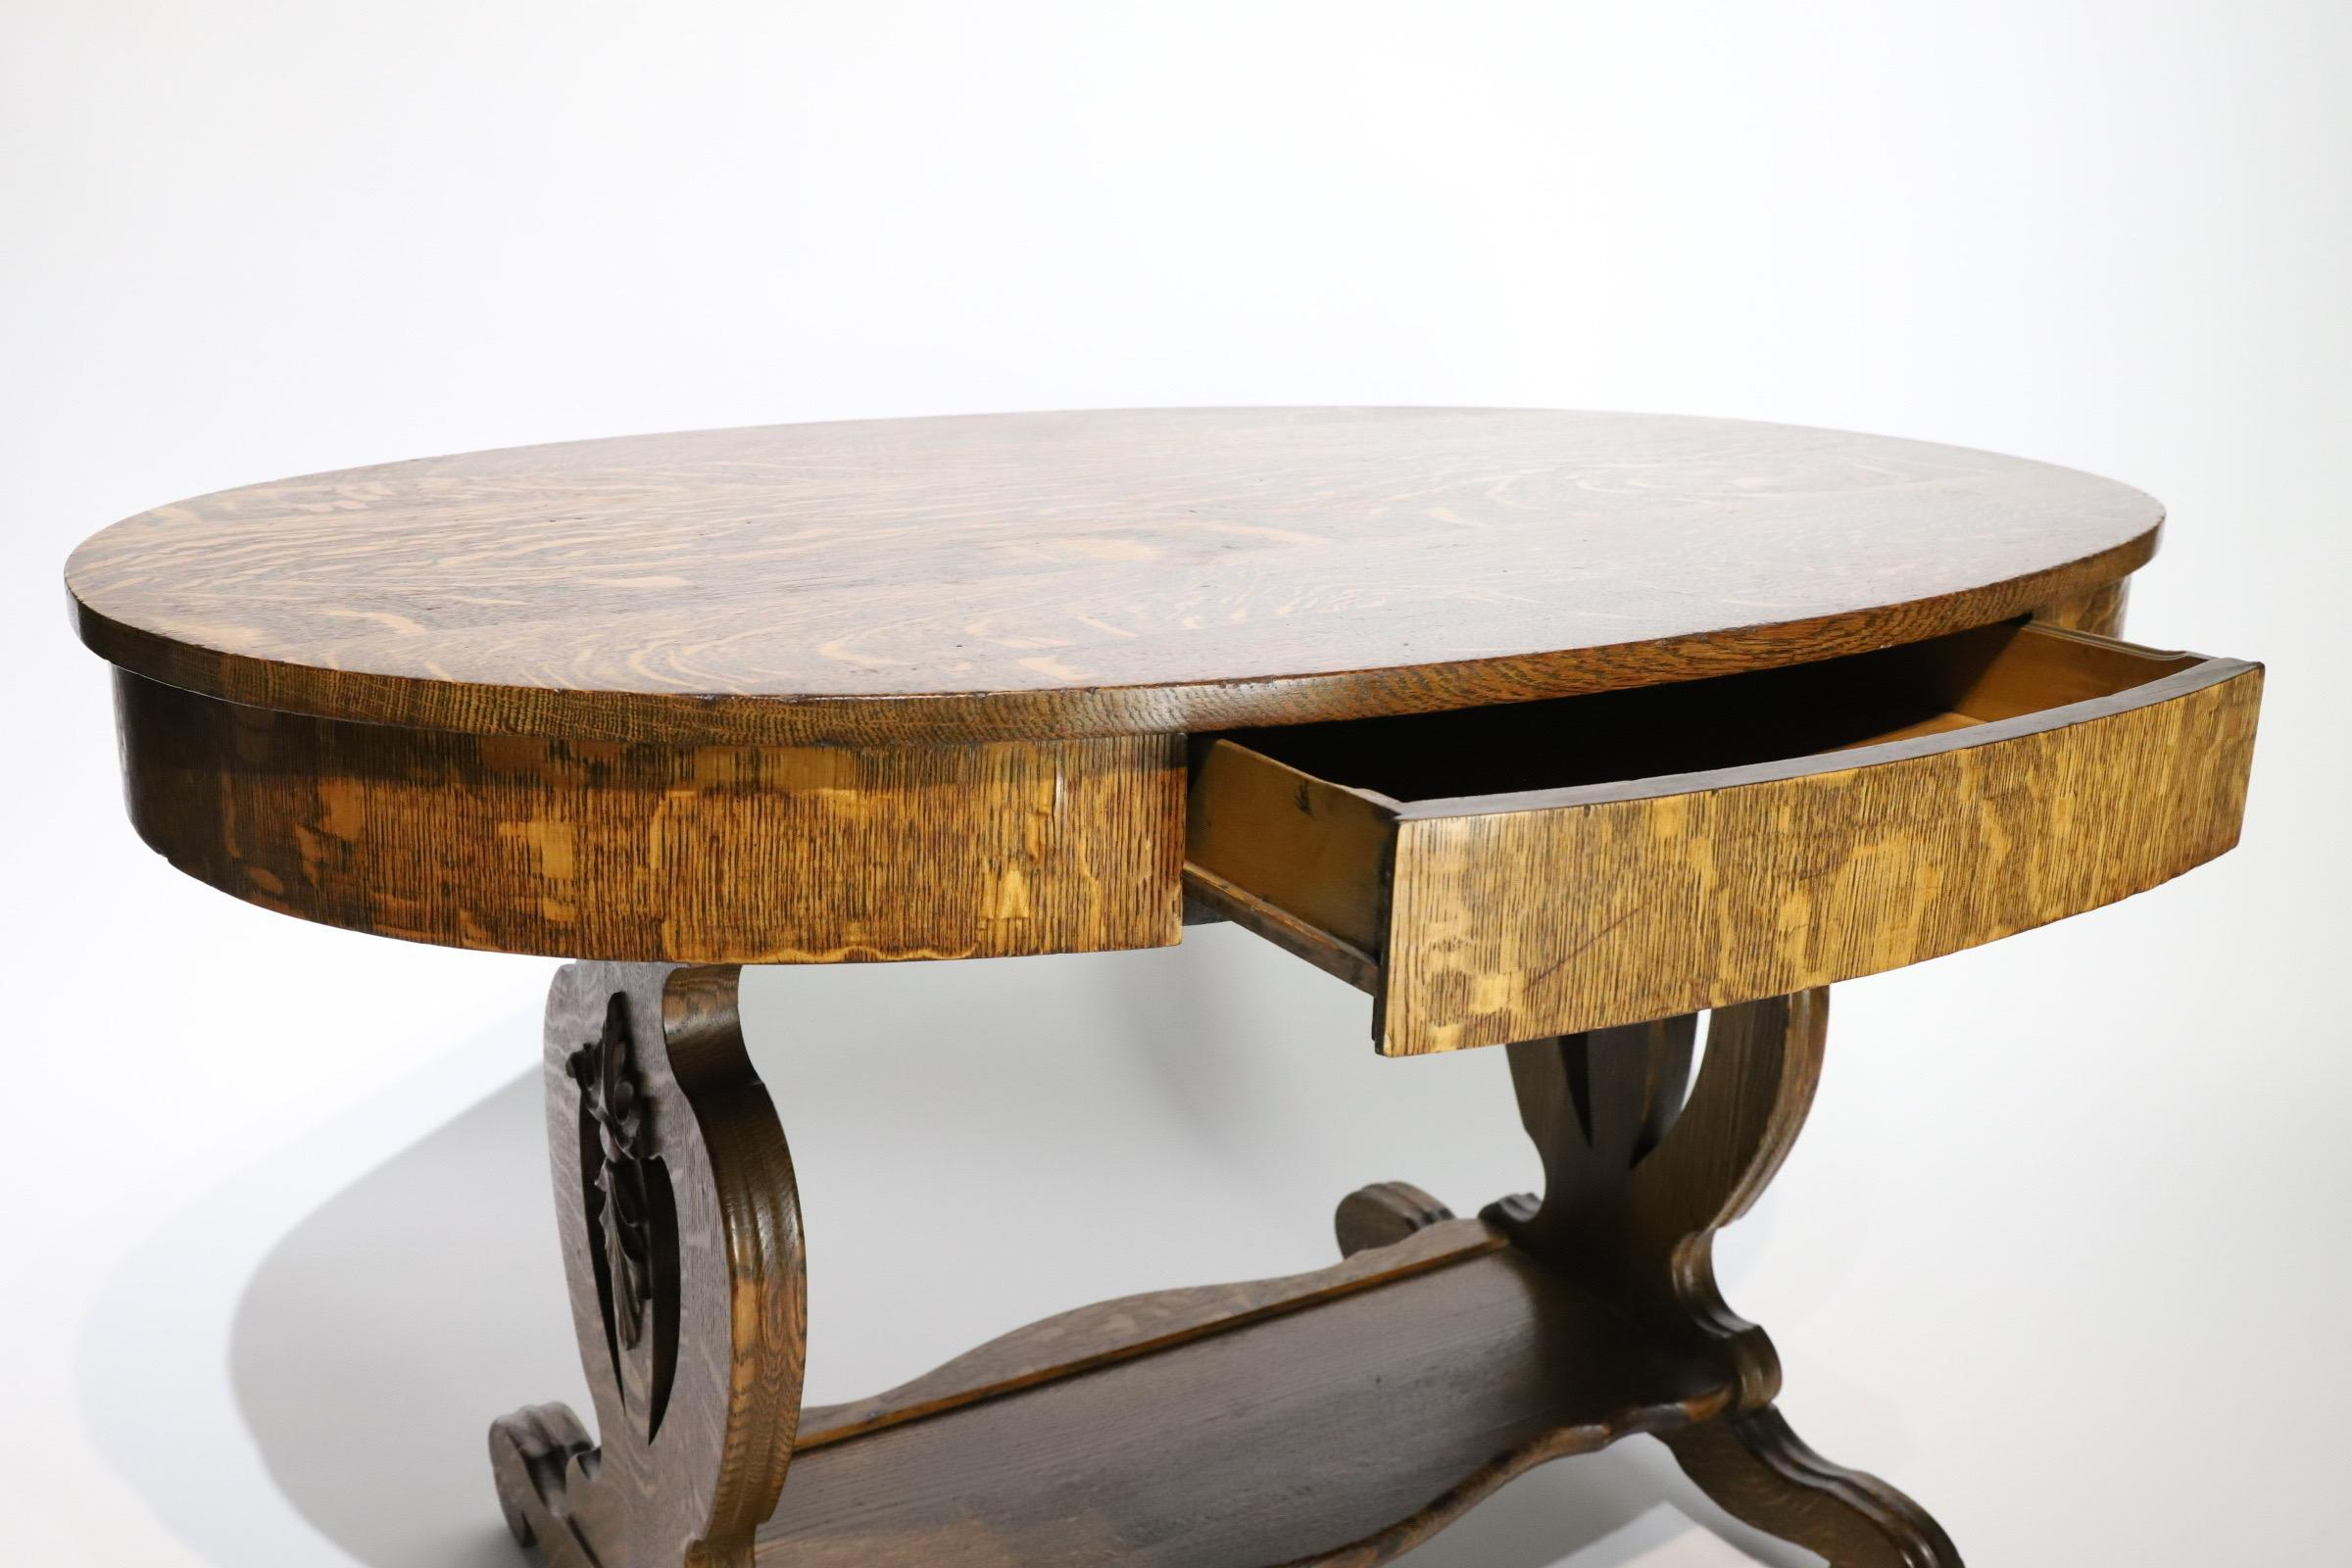 quarter sawn oak table